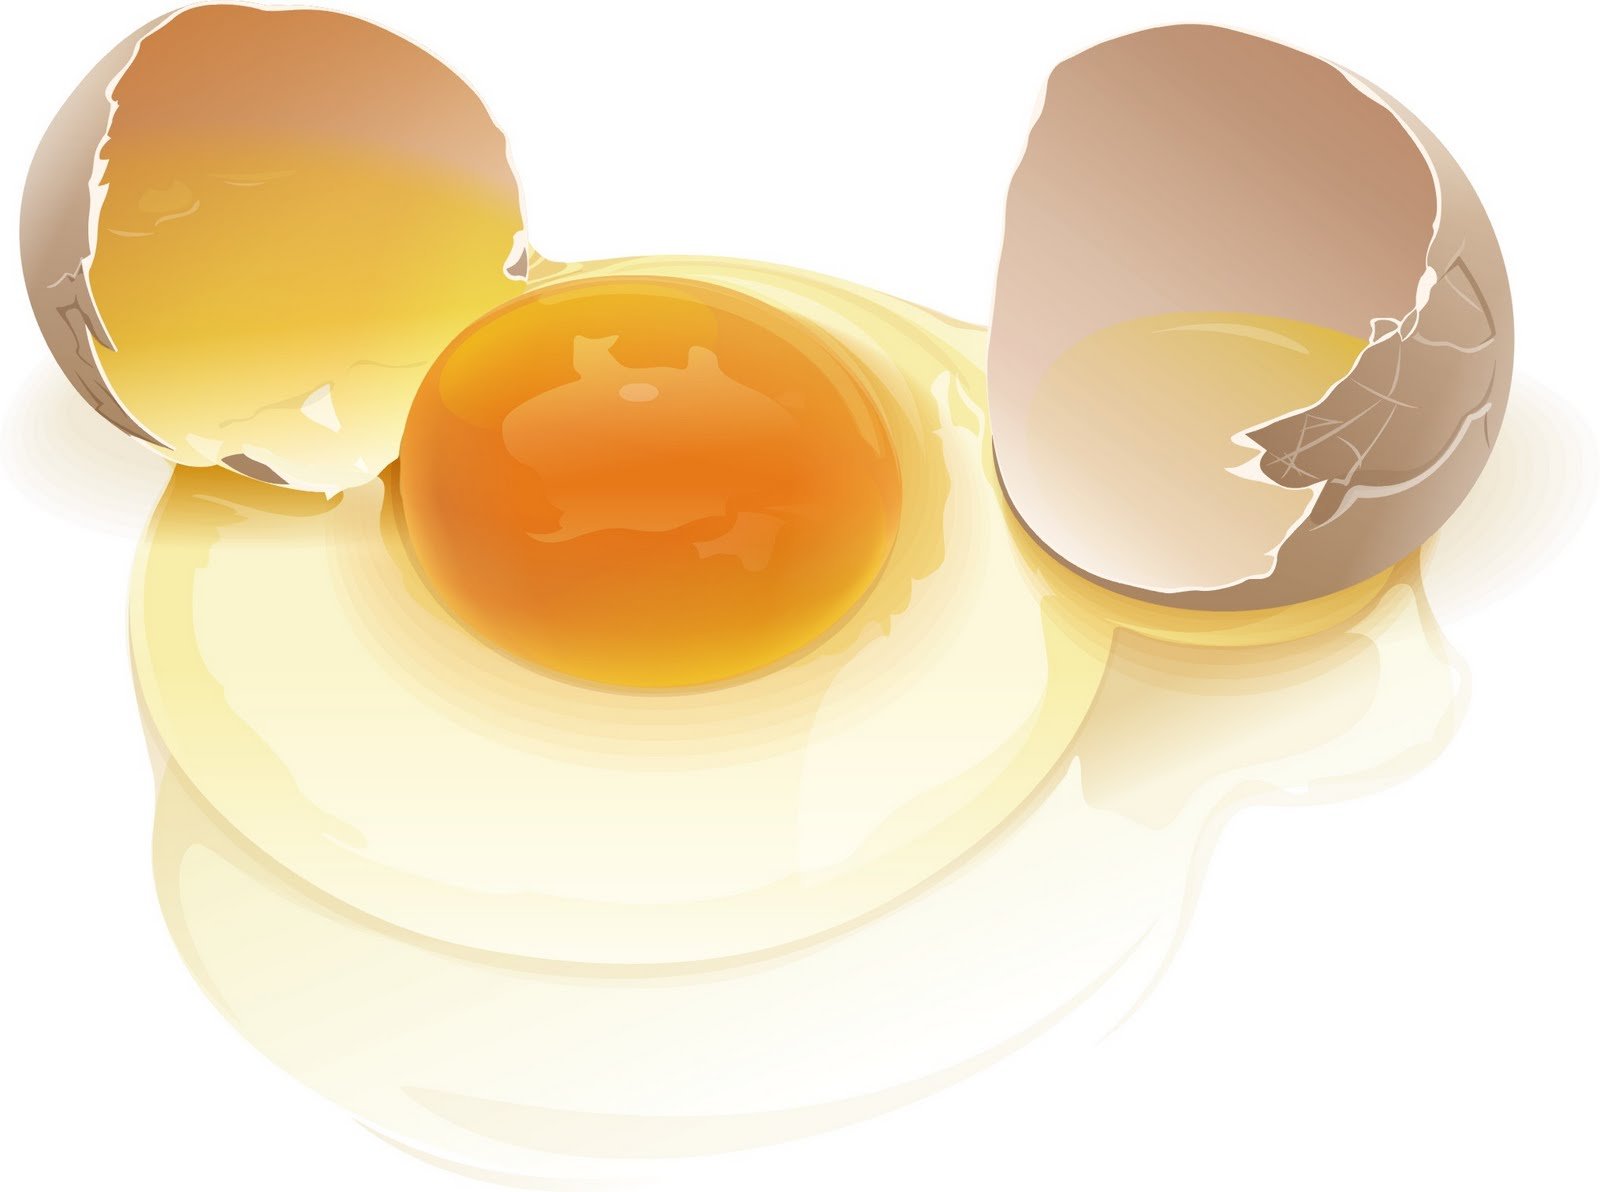 Куриный белок детям. Разбитое яйцо. Яйцо куриное. Яичный желток. Яичный белок.